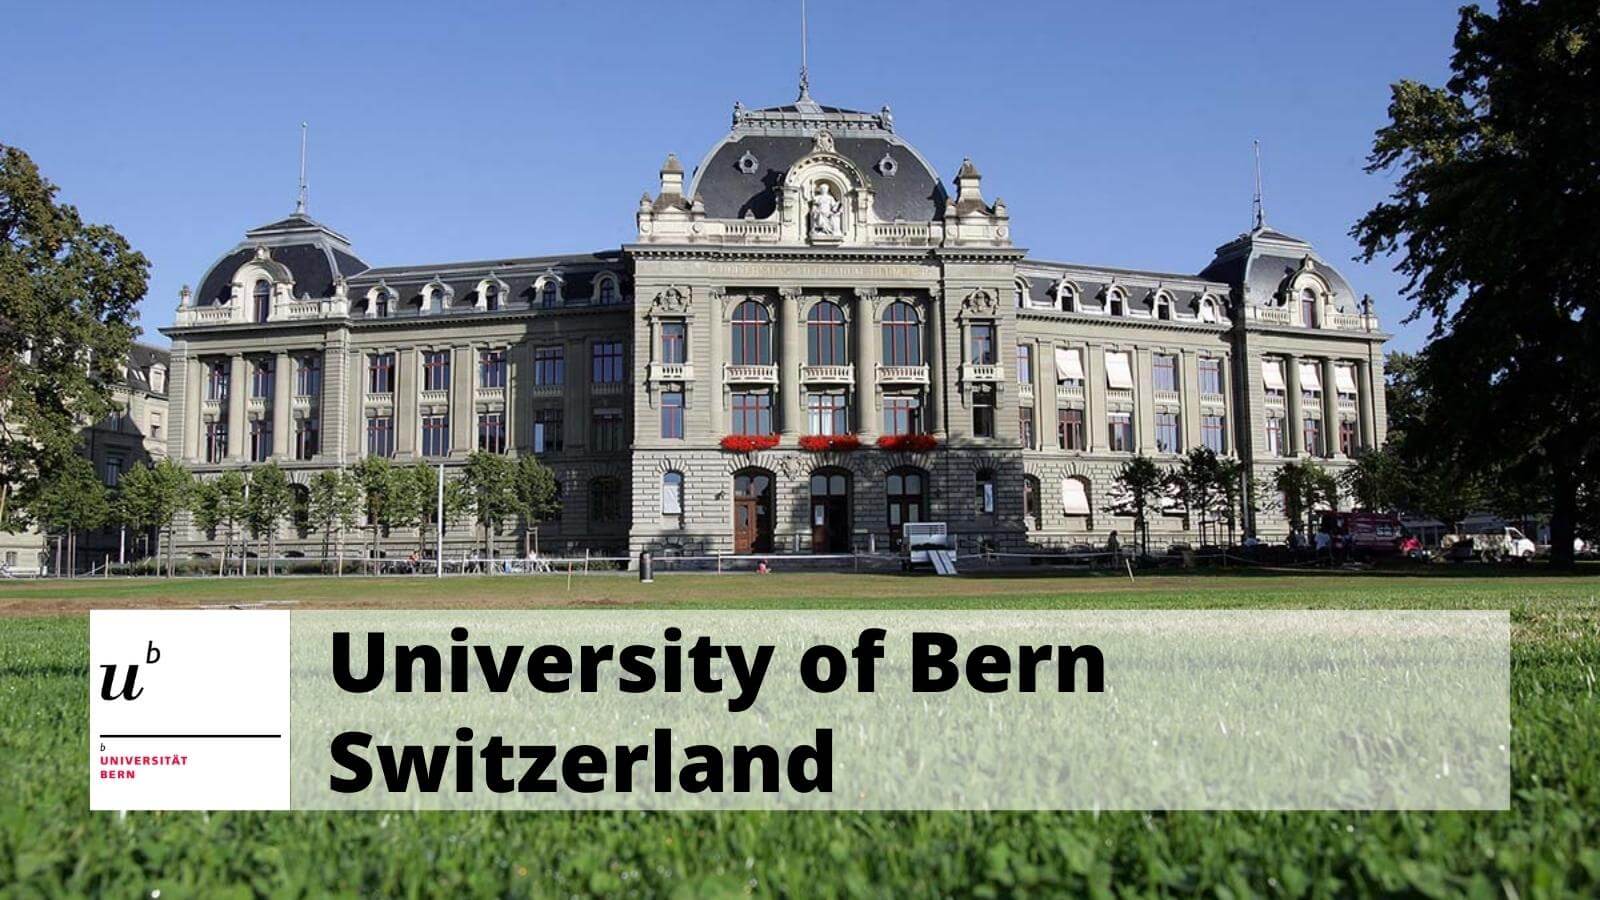 Main building of the University of Bern, Switzerland